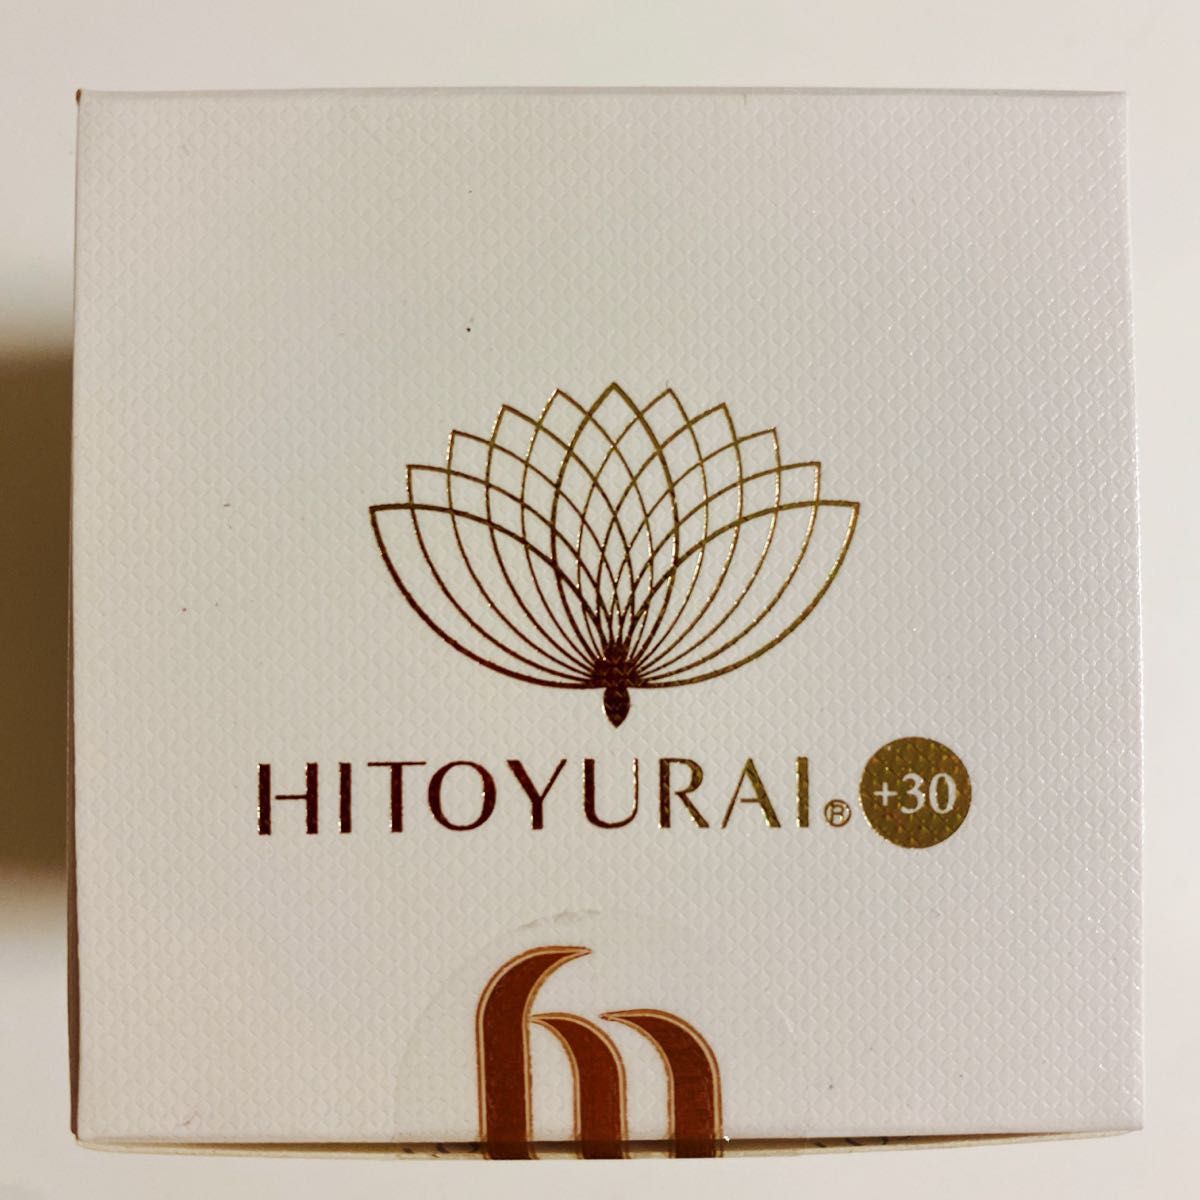 HITOYURAI+30 ヒトユライ プレミアム エクストラ クリーム 30